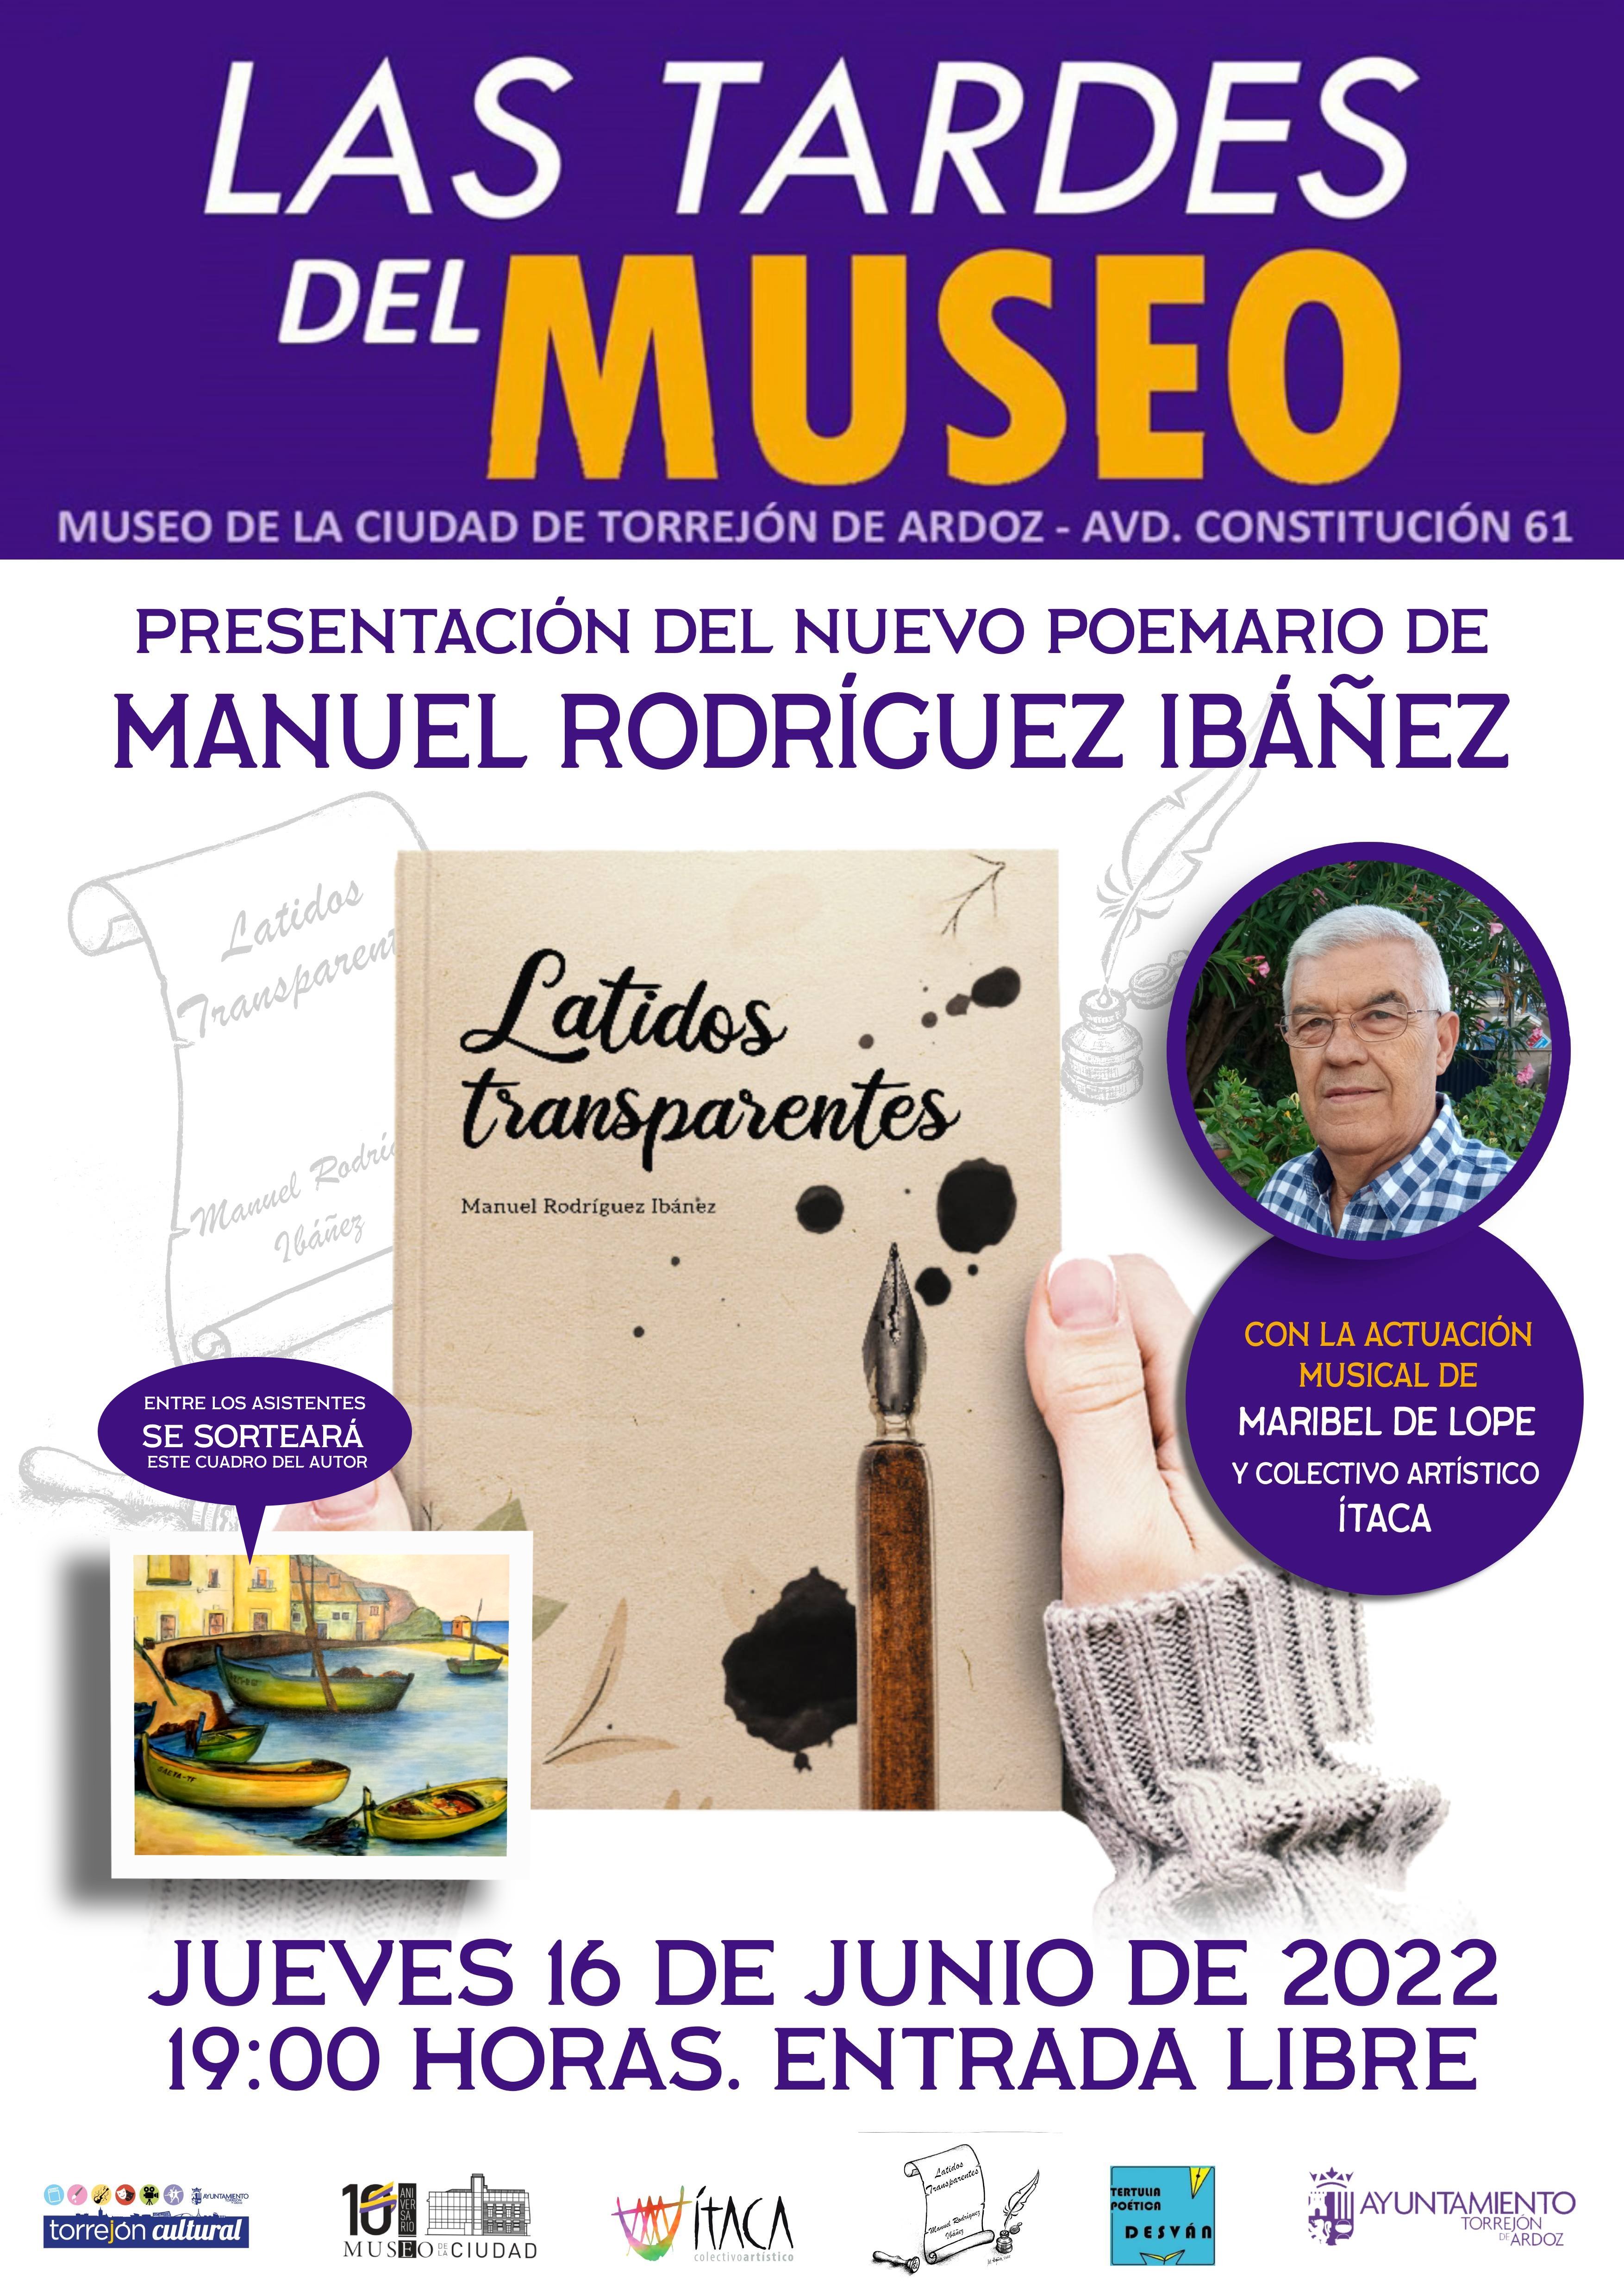 LAS TARDES DEL MUSEO - Presentación del nuevo poemario de Manuel Rodríguez Ibáñez